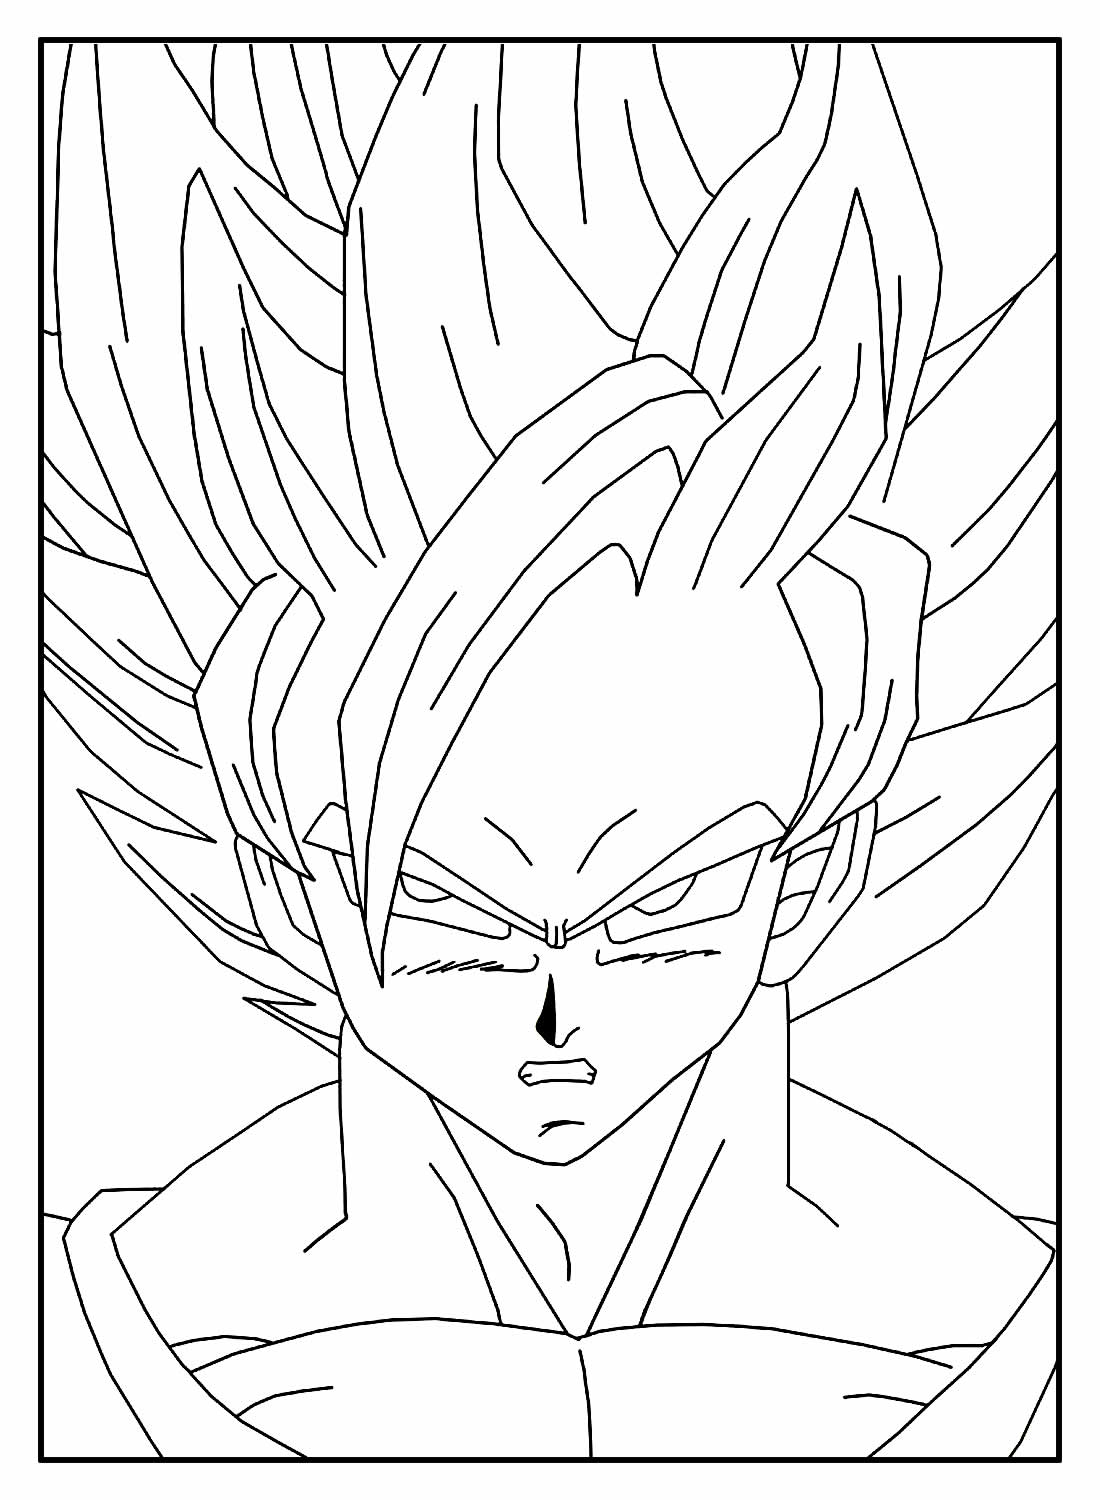 Goku desenhos para colorir, confira | Focalizando